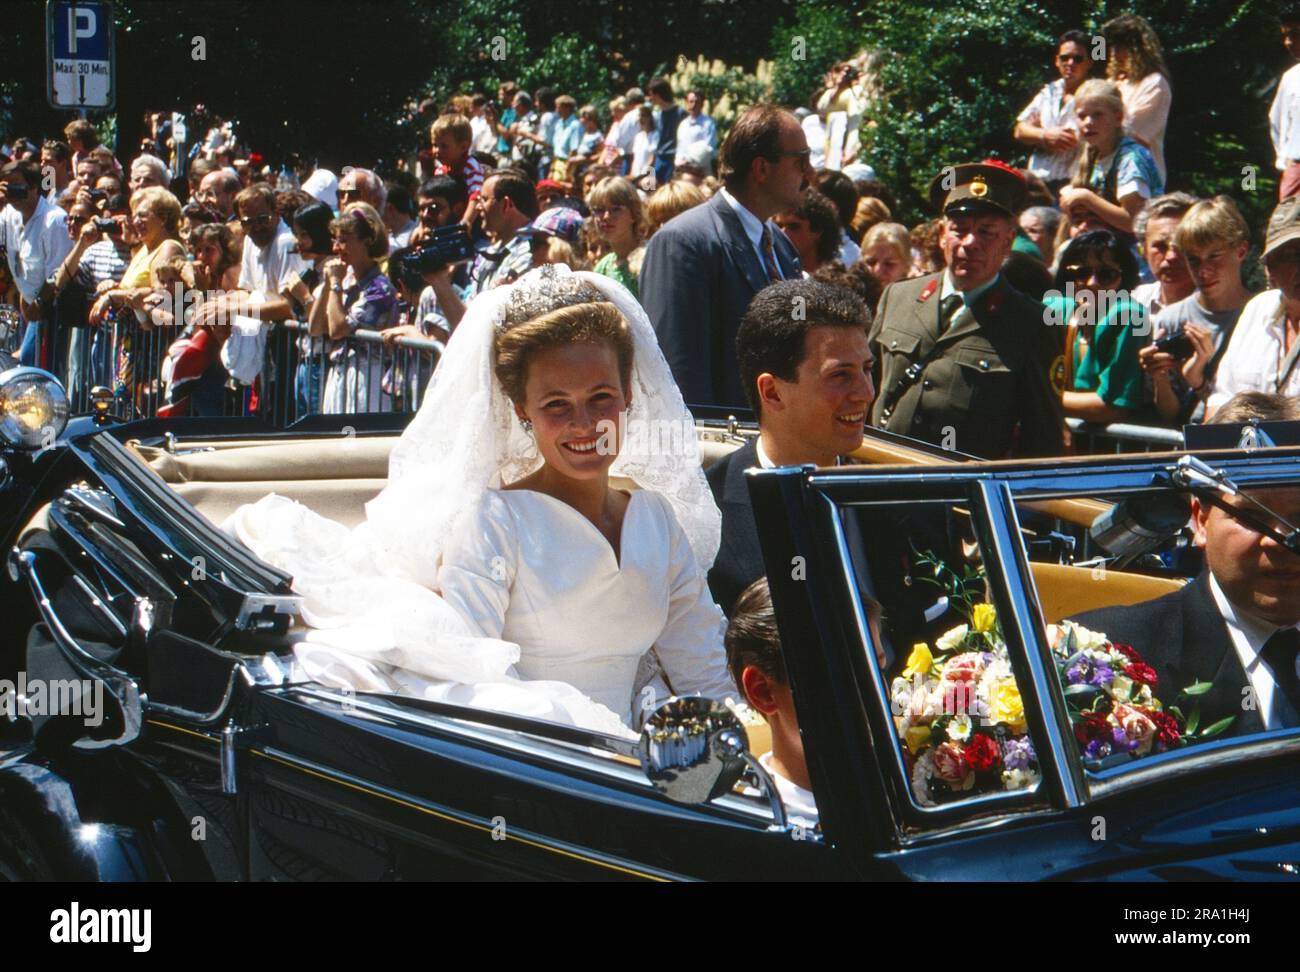 Erbprinz Alois von und zu Liechtenstein, Graf zu Rietberg, mit seiner Braut  Sophie Herzogin in Bayern, am Tag ihrer Heirat in Vaduz, Liechtenstein 1993  Stock Photo - Alamy